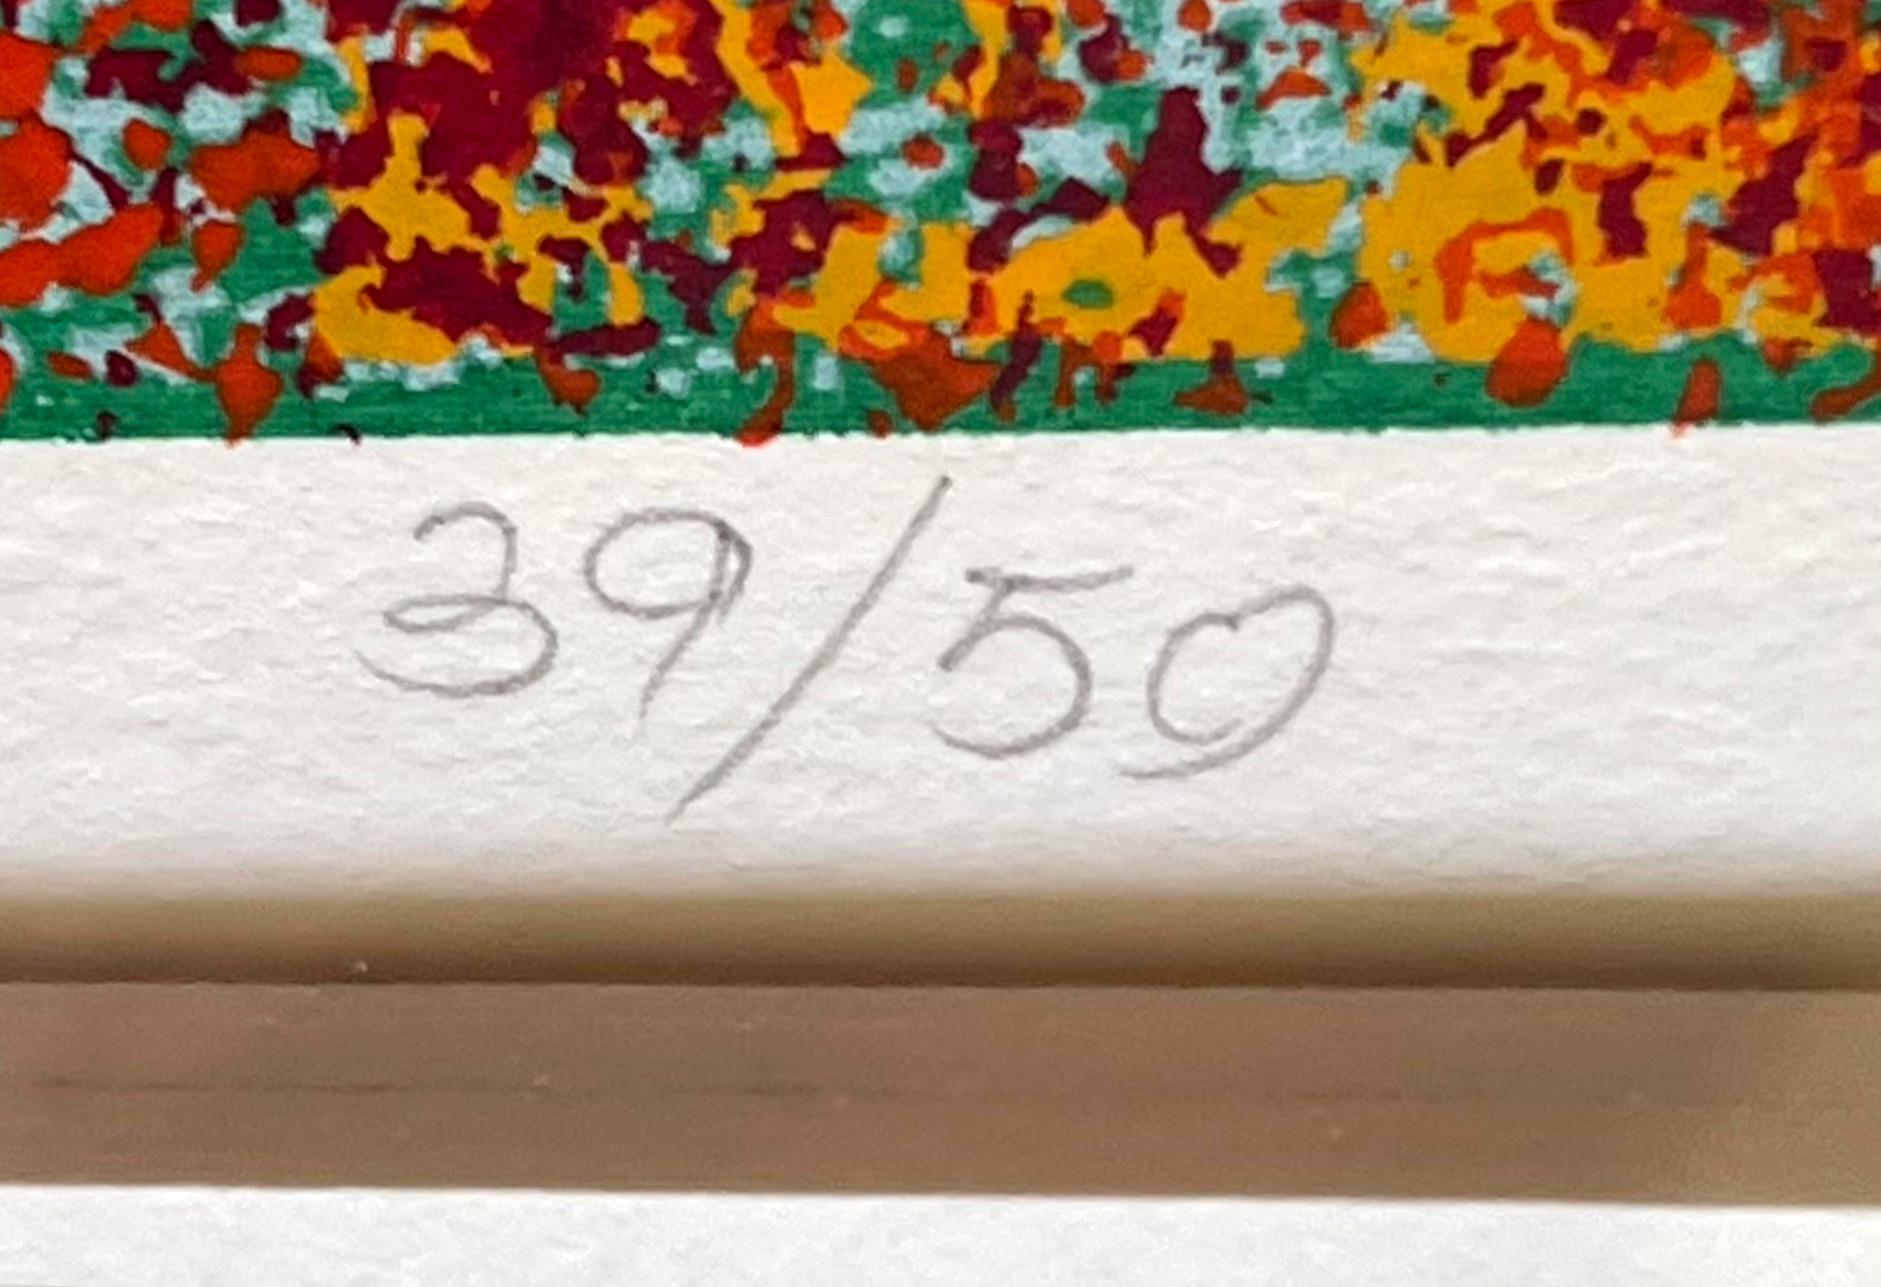 Natvar Bhavsar
Gravure expressionniste abstraite sans titre (signée et numérotée à la main)
Sérigraphie couleur
Signé au crayon, daté et numéroté 39/50 par l'artiste au recto.
Rare estampe de 1970 de l'artiste indien-américain de renommée mondiale,